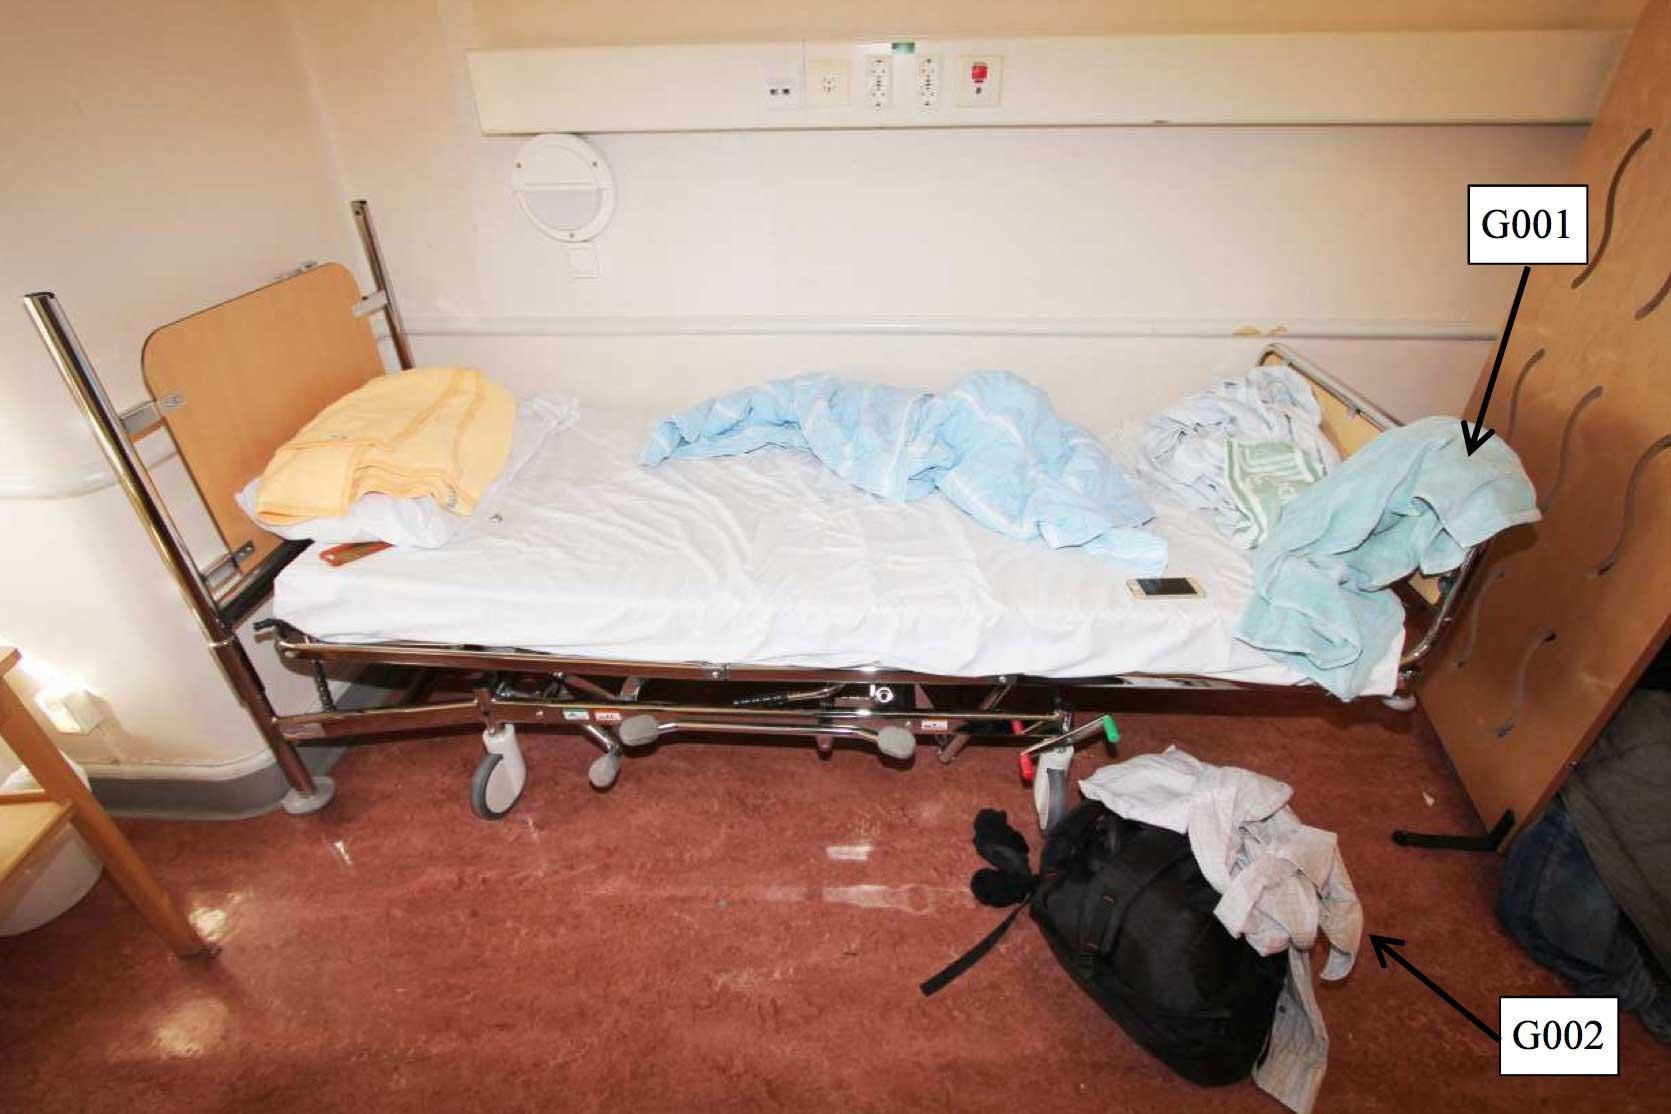 En man försökte strypa en annan patient på en psykiatrisk akutvårdsavdelning vid Sankt Görans sjukhus i Stockholm. Bilden visar den misstänktes rum. Bilden kommer från polisens förundersökning.